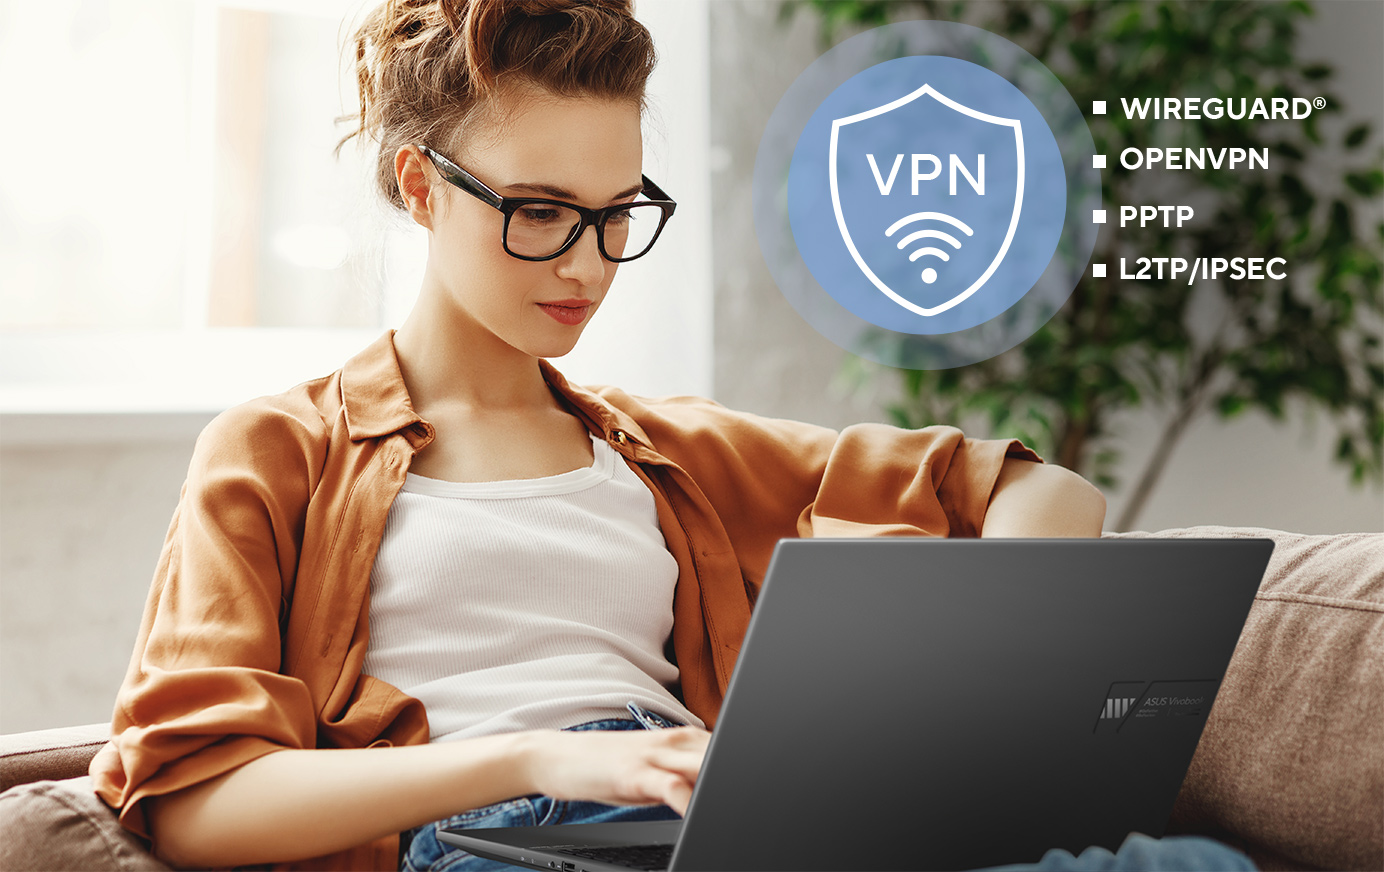 Thiết bị router ASUS hỗ trợ nhiều giao thức bảo mật VPN, bao gồm WireGuard®, OpenVPN, PPTP và L2TP/IPSec.